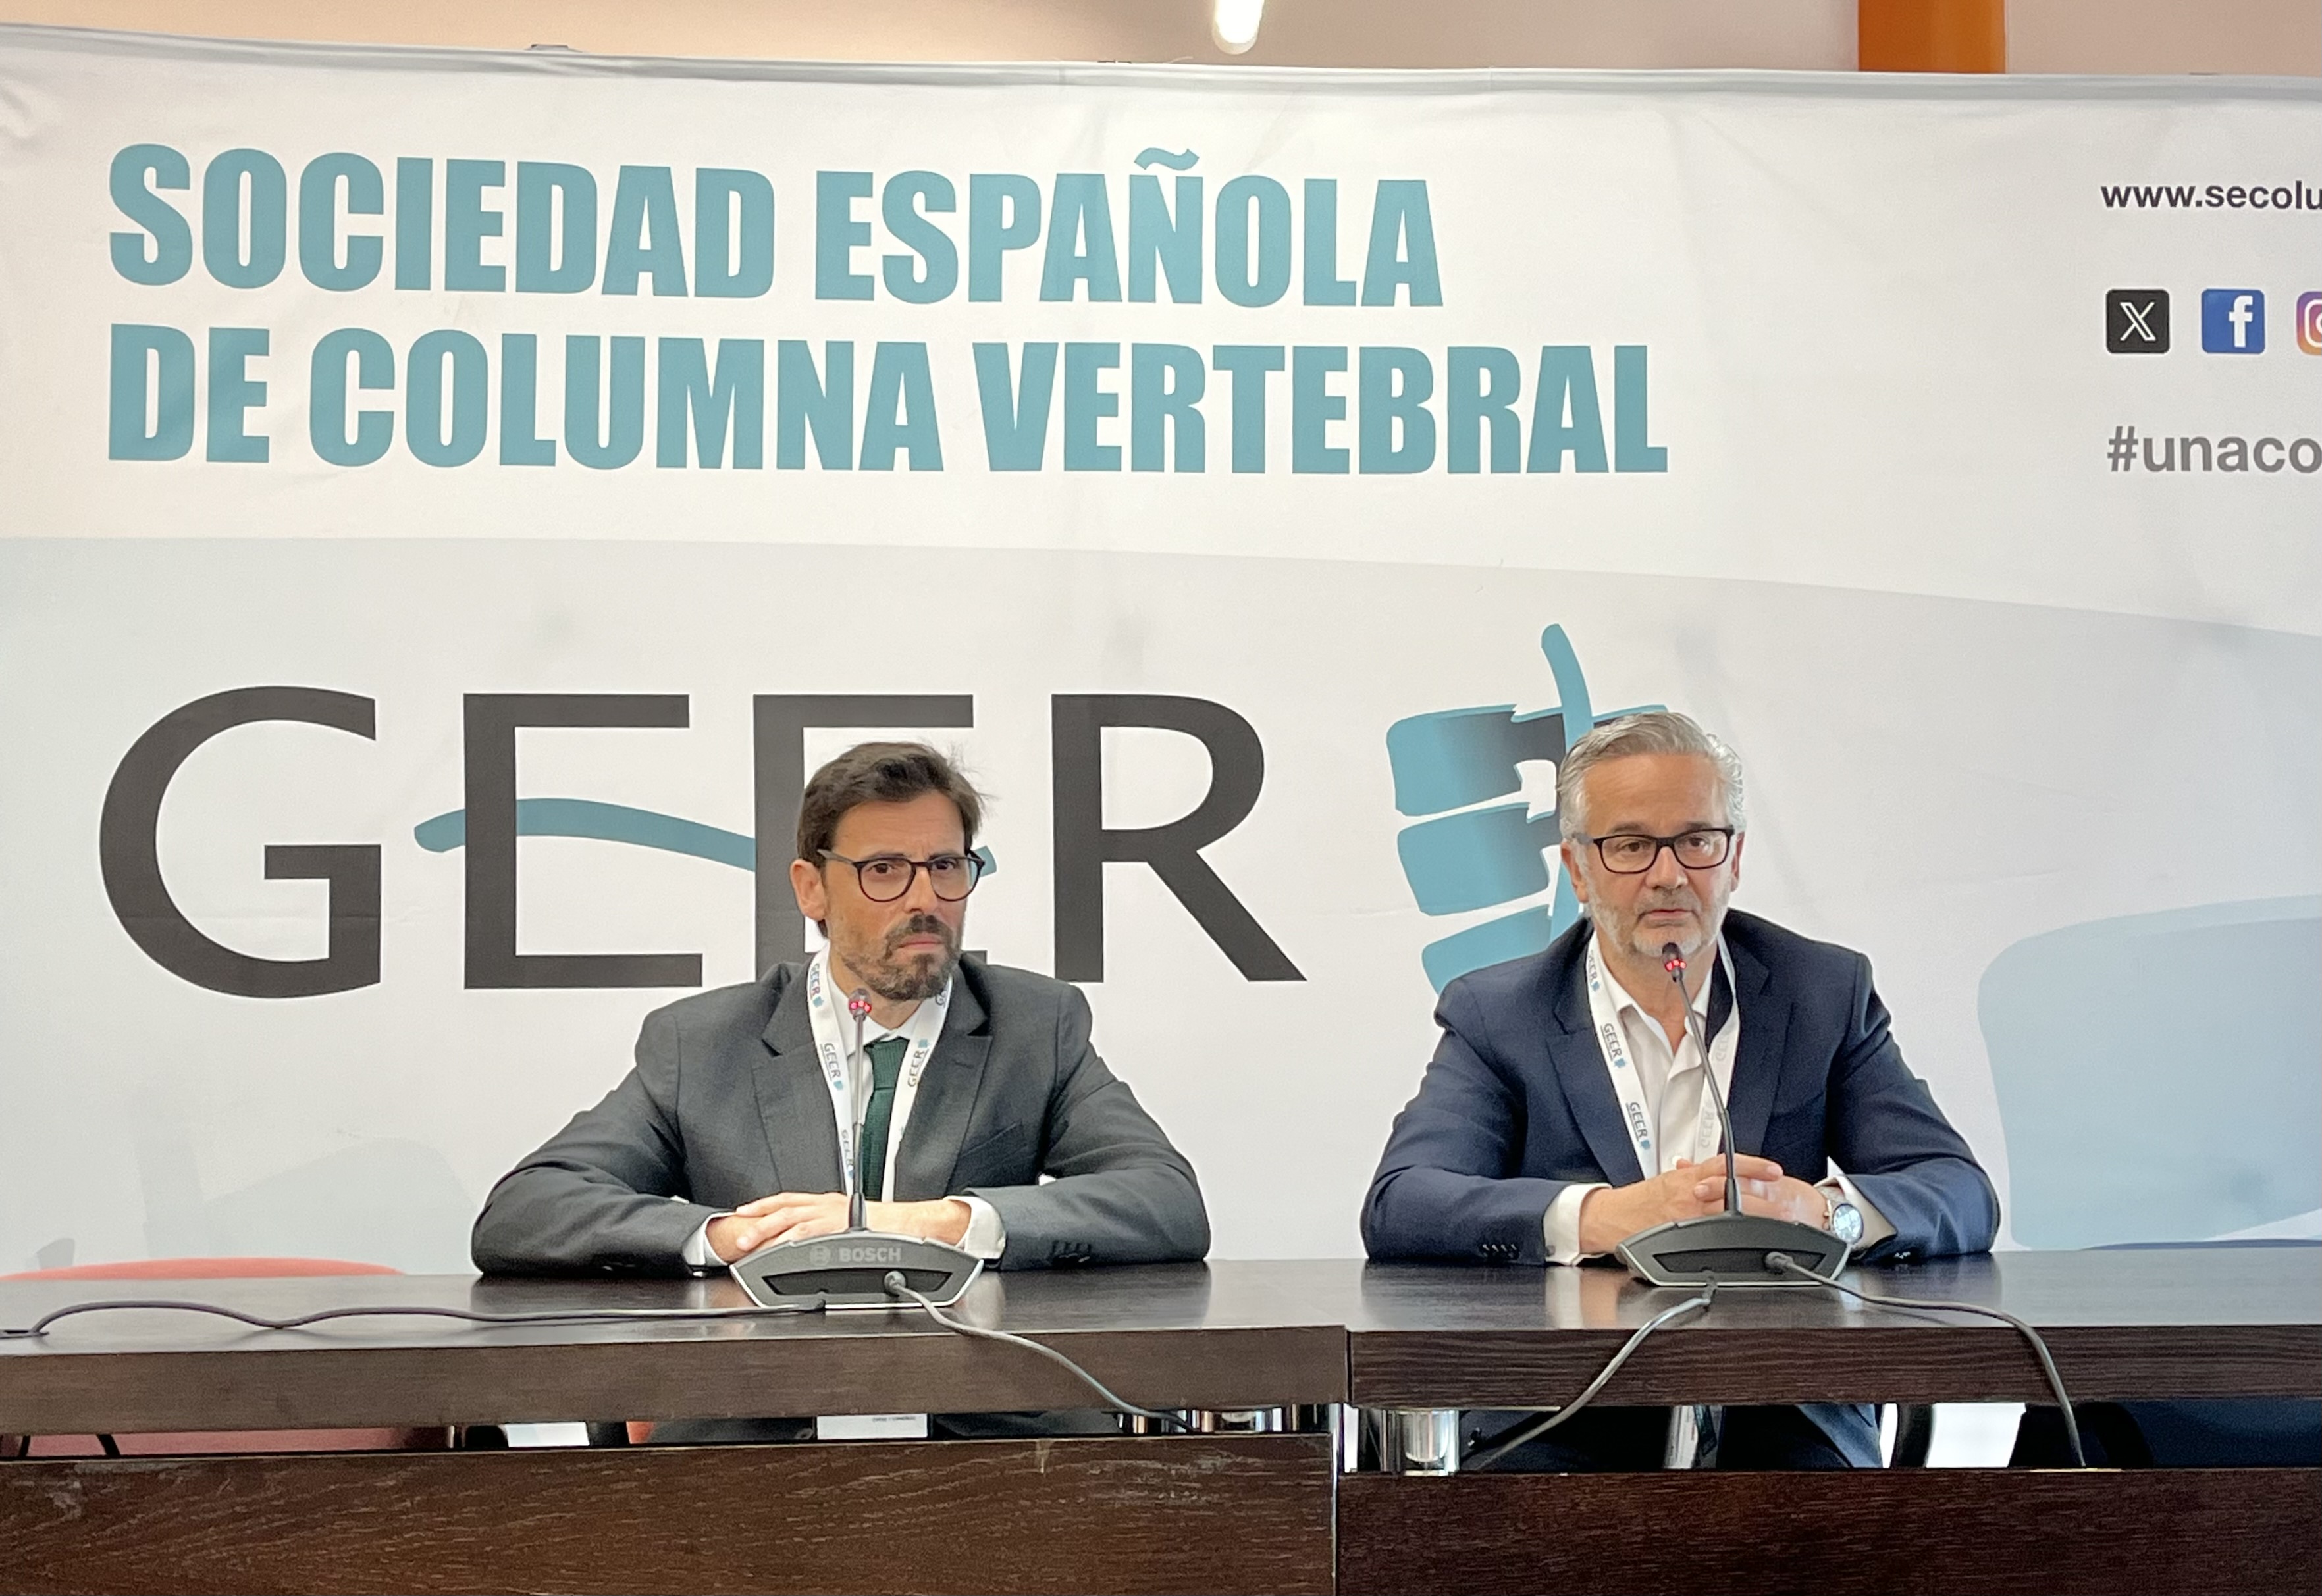 Especialistas solicitan unificar el tratamiento, rehabilitación y cuidados de los pacientes con lesiones medulares en España, marcados por la falta de criterios comunes y la desigualdad de acceso